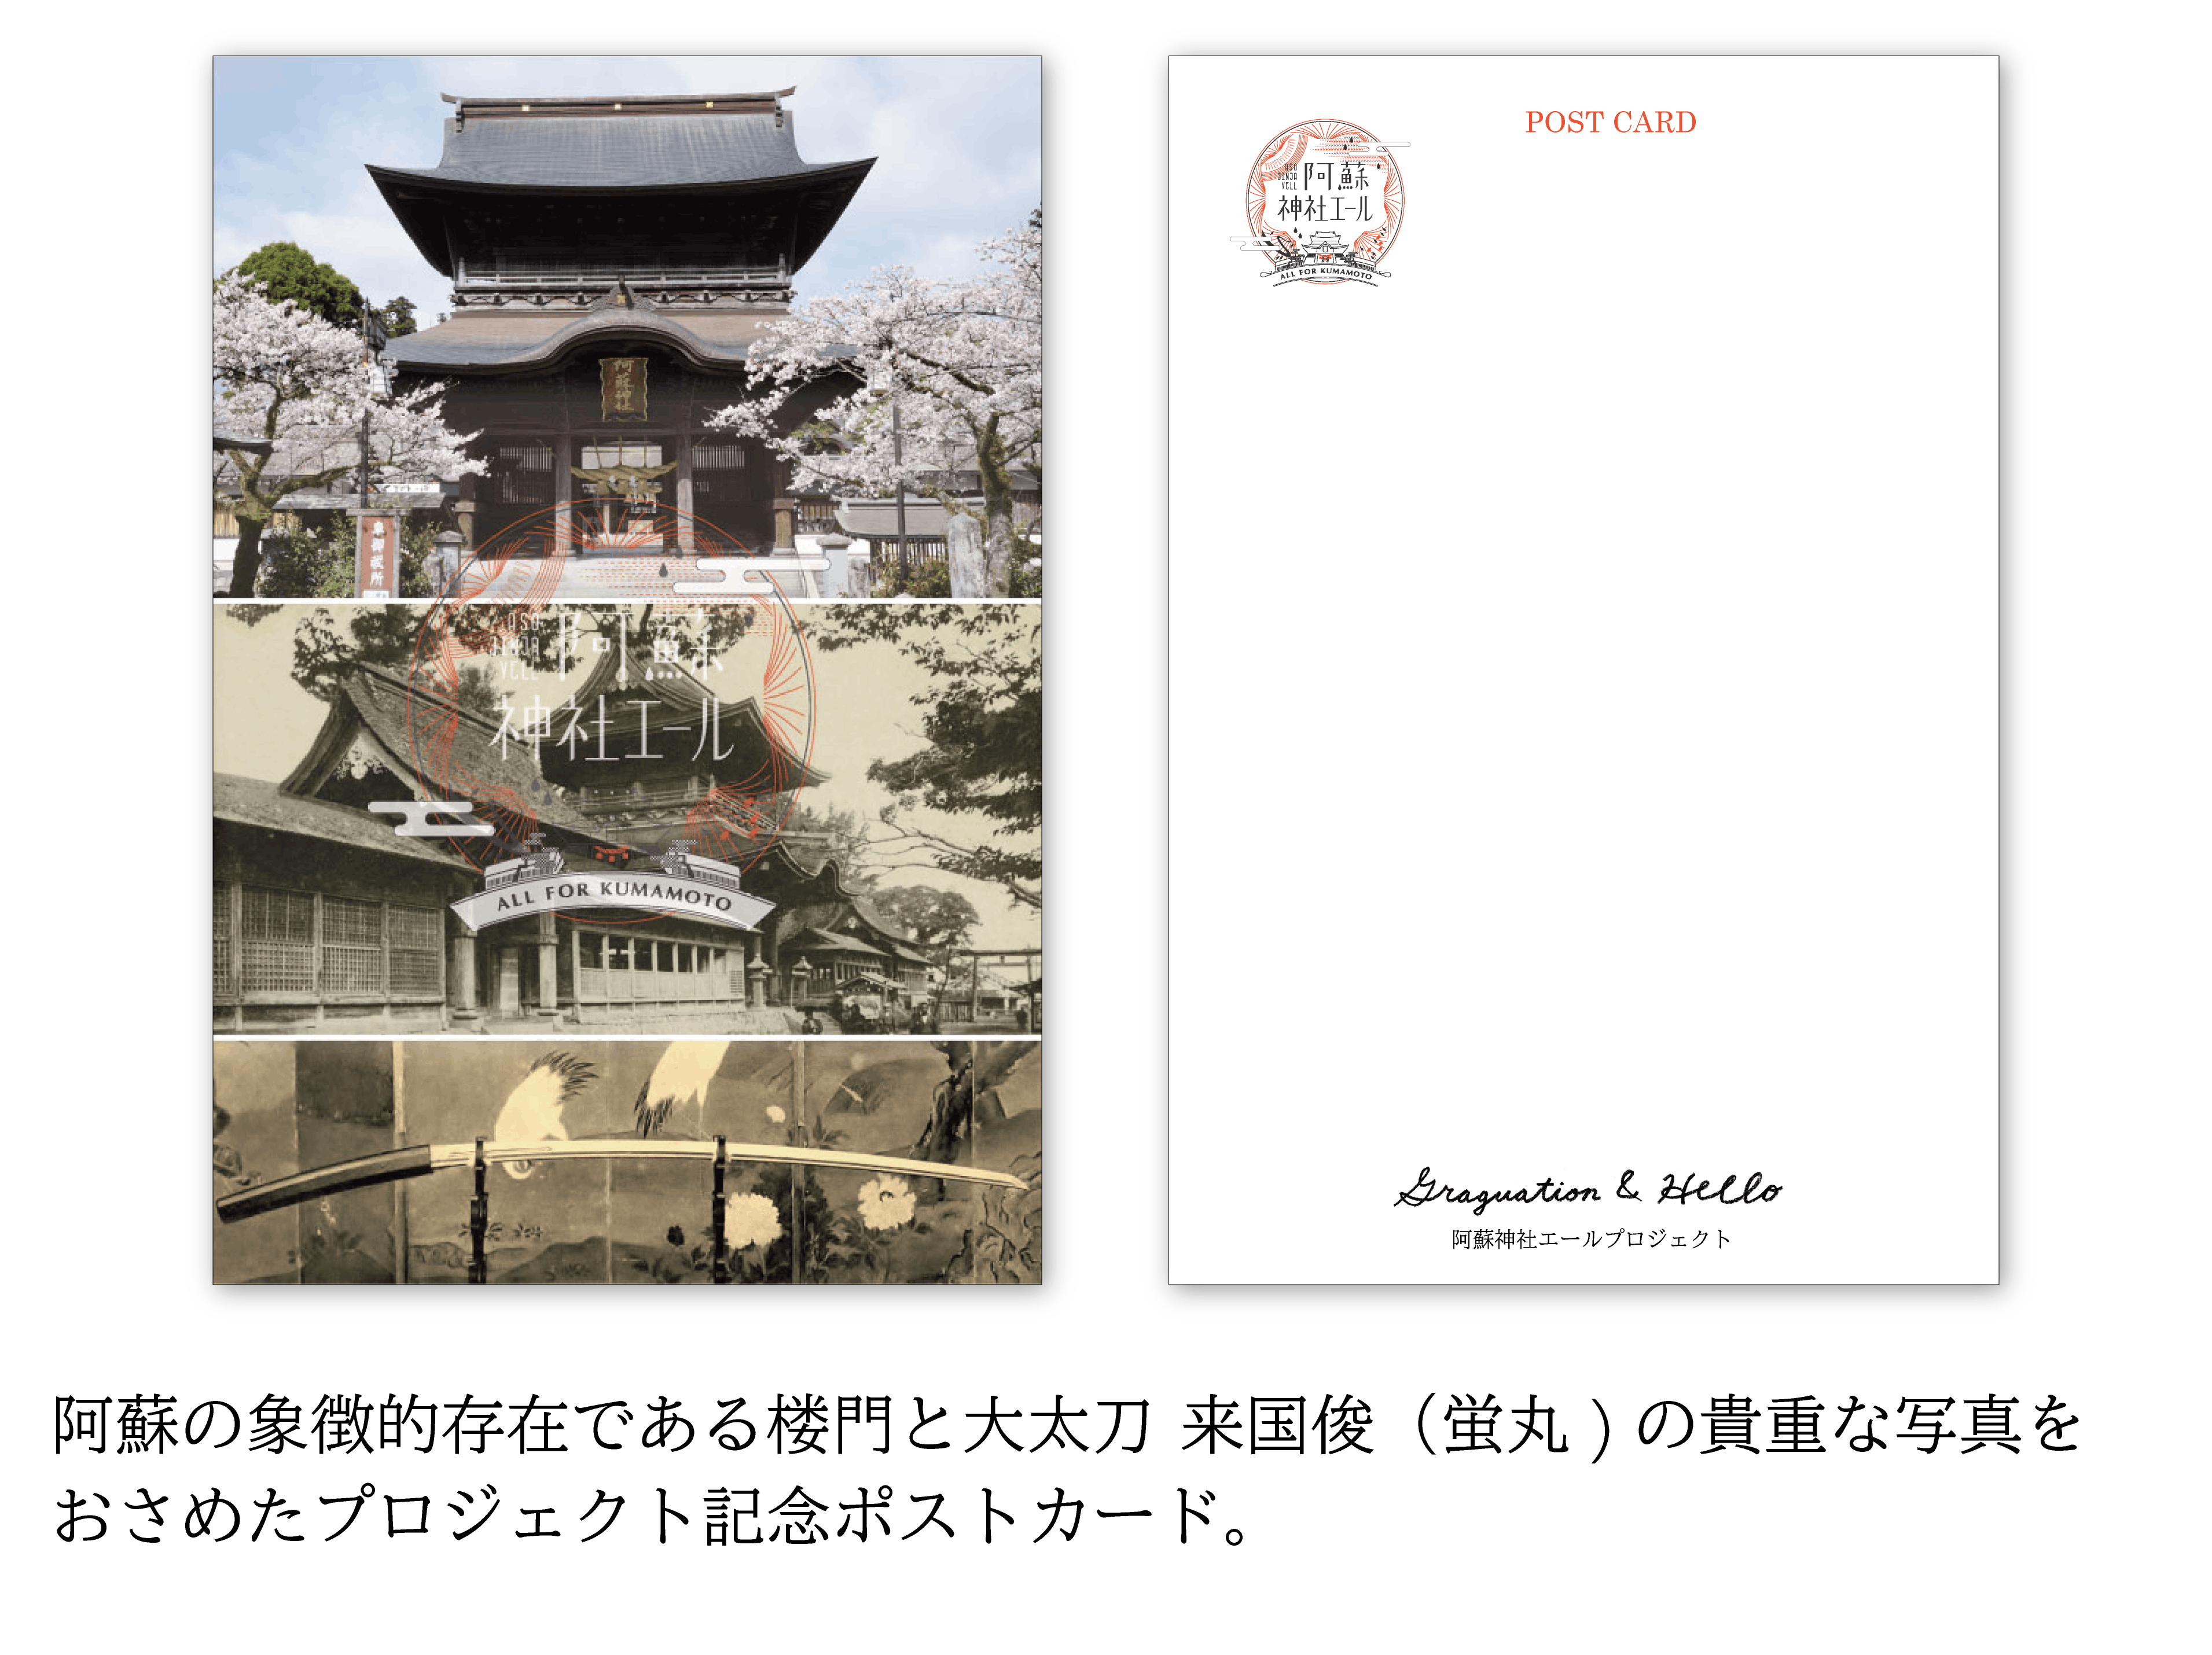 熊本復興 阿蘇神社エール プロジェクト 阿蘇神社の再建に支援を Campfire キャンプファイヤー